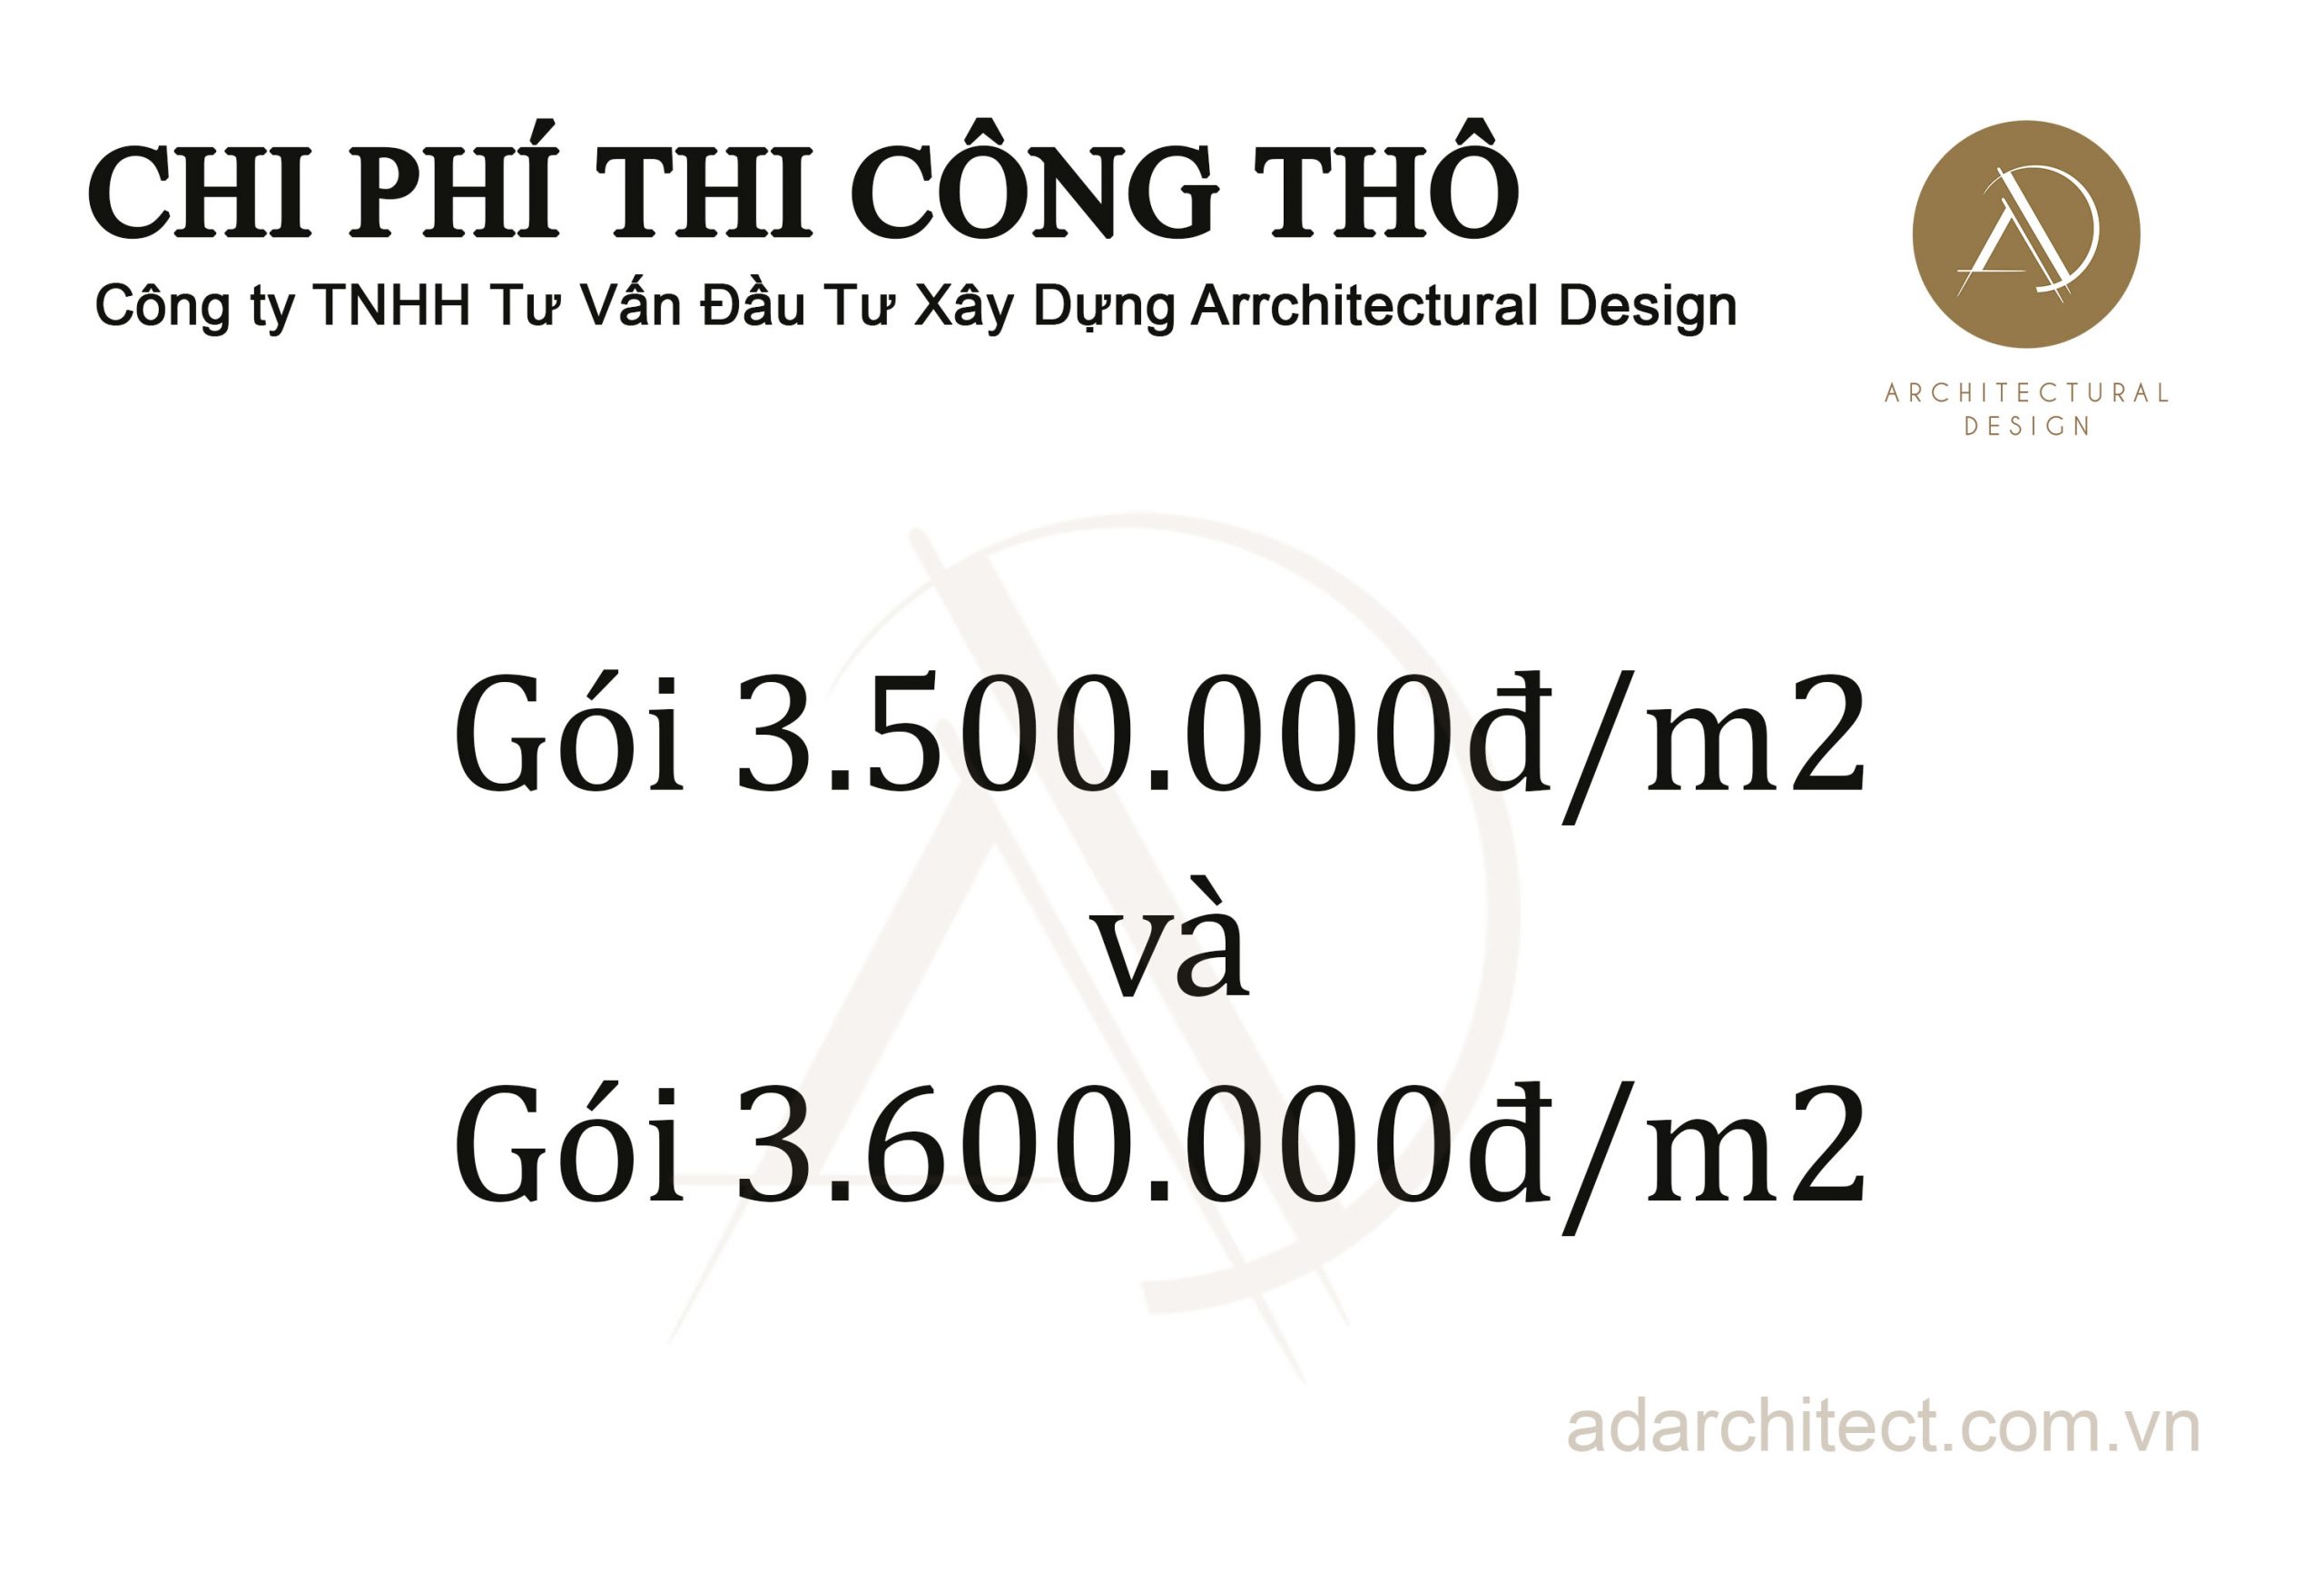 đơn vị thiết kế nhà uy tín: Chi phí thi công thô của công ty ADArchitect